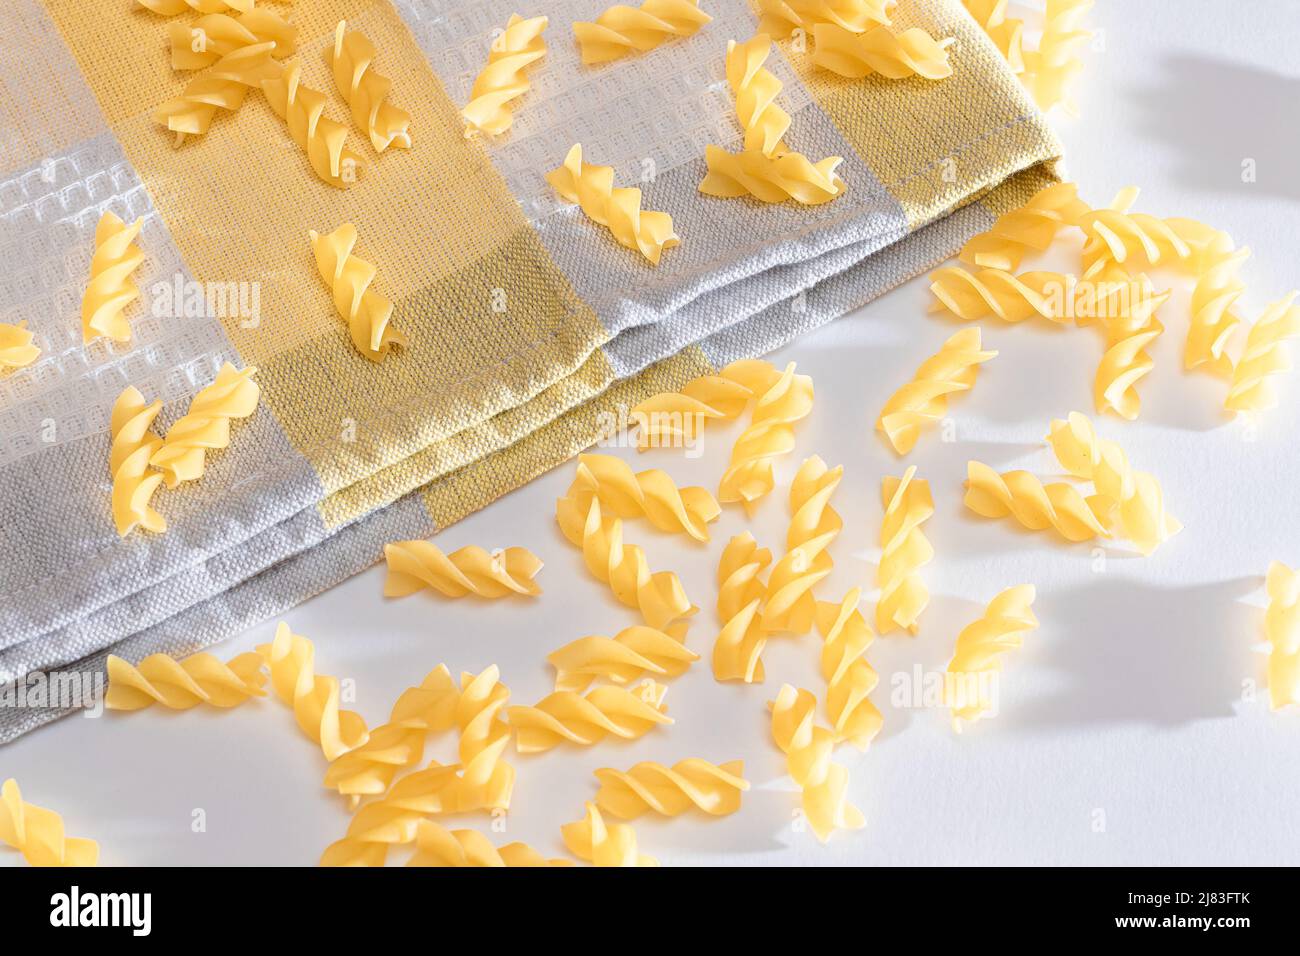 Pasta di Fusilli non cotta sparse su tavola bianca. Macaroni crudi e secchi. Cibo grasso e malsano Foto Stock